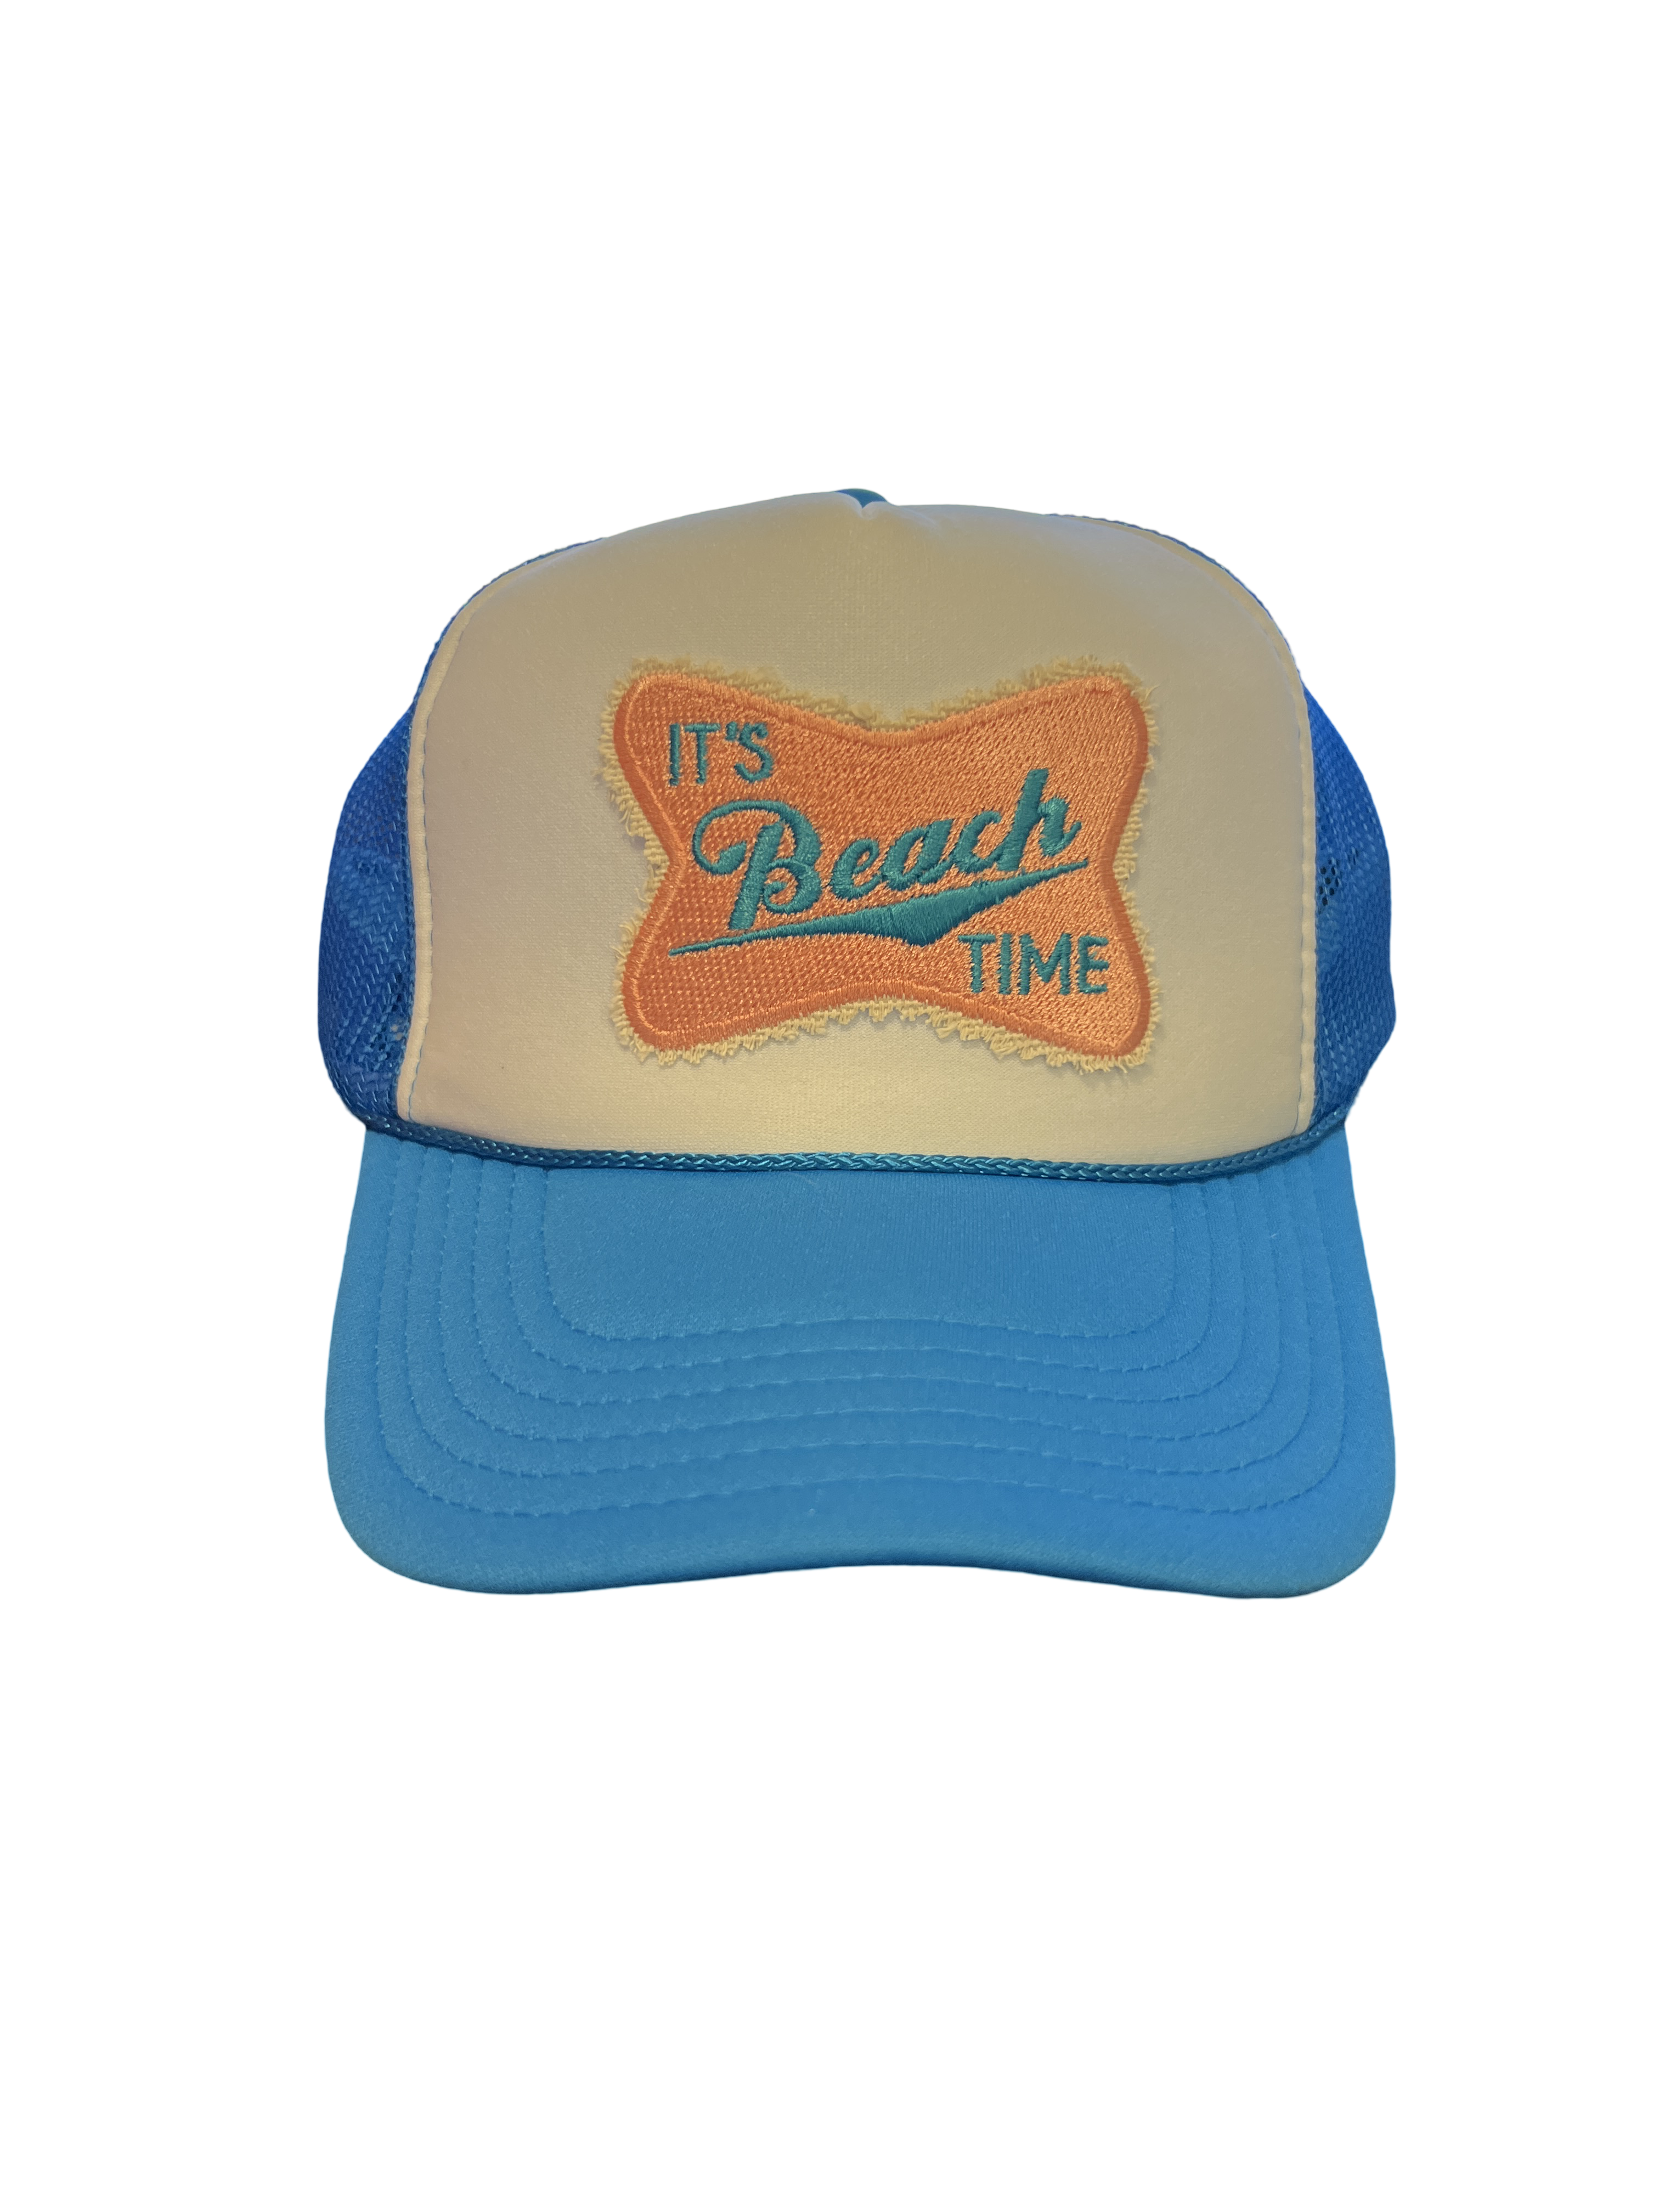 Trucker Hat Foam "It's Beach Time"